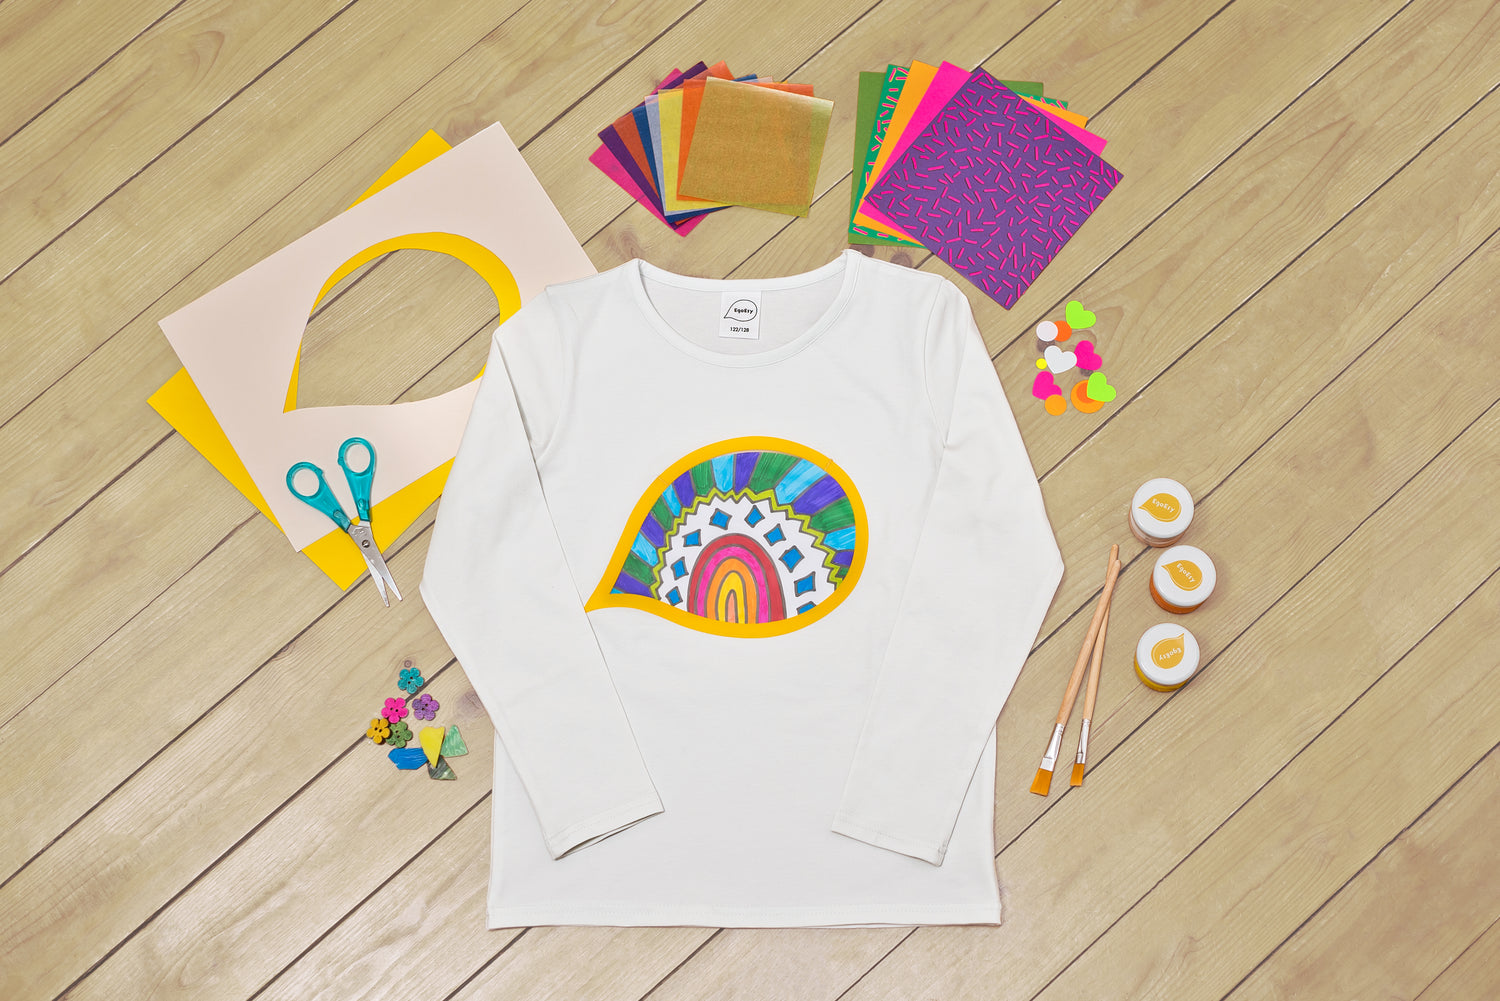 EgoEsy Shirt für Familien, MiniMe Look, eine kreative Beschäftigung für Kinder, Eltern und Großeltern; Kreativset, Bastelmaterialien